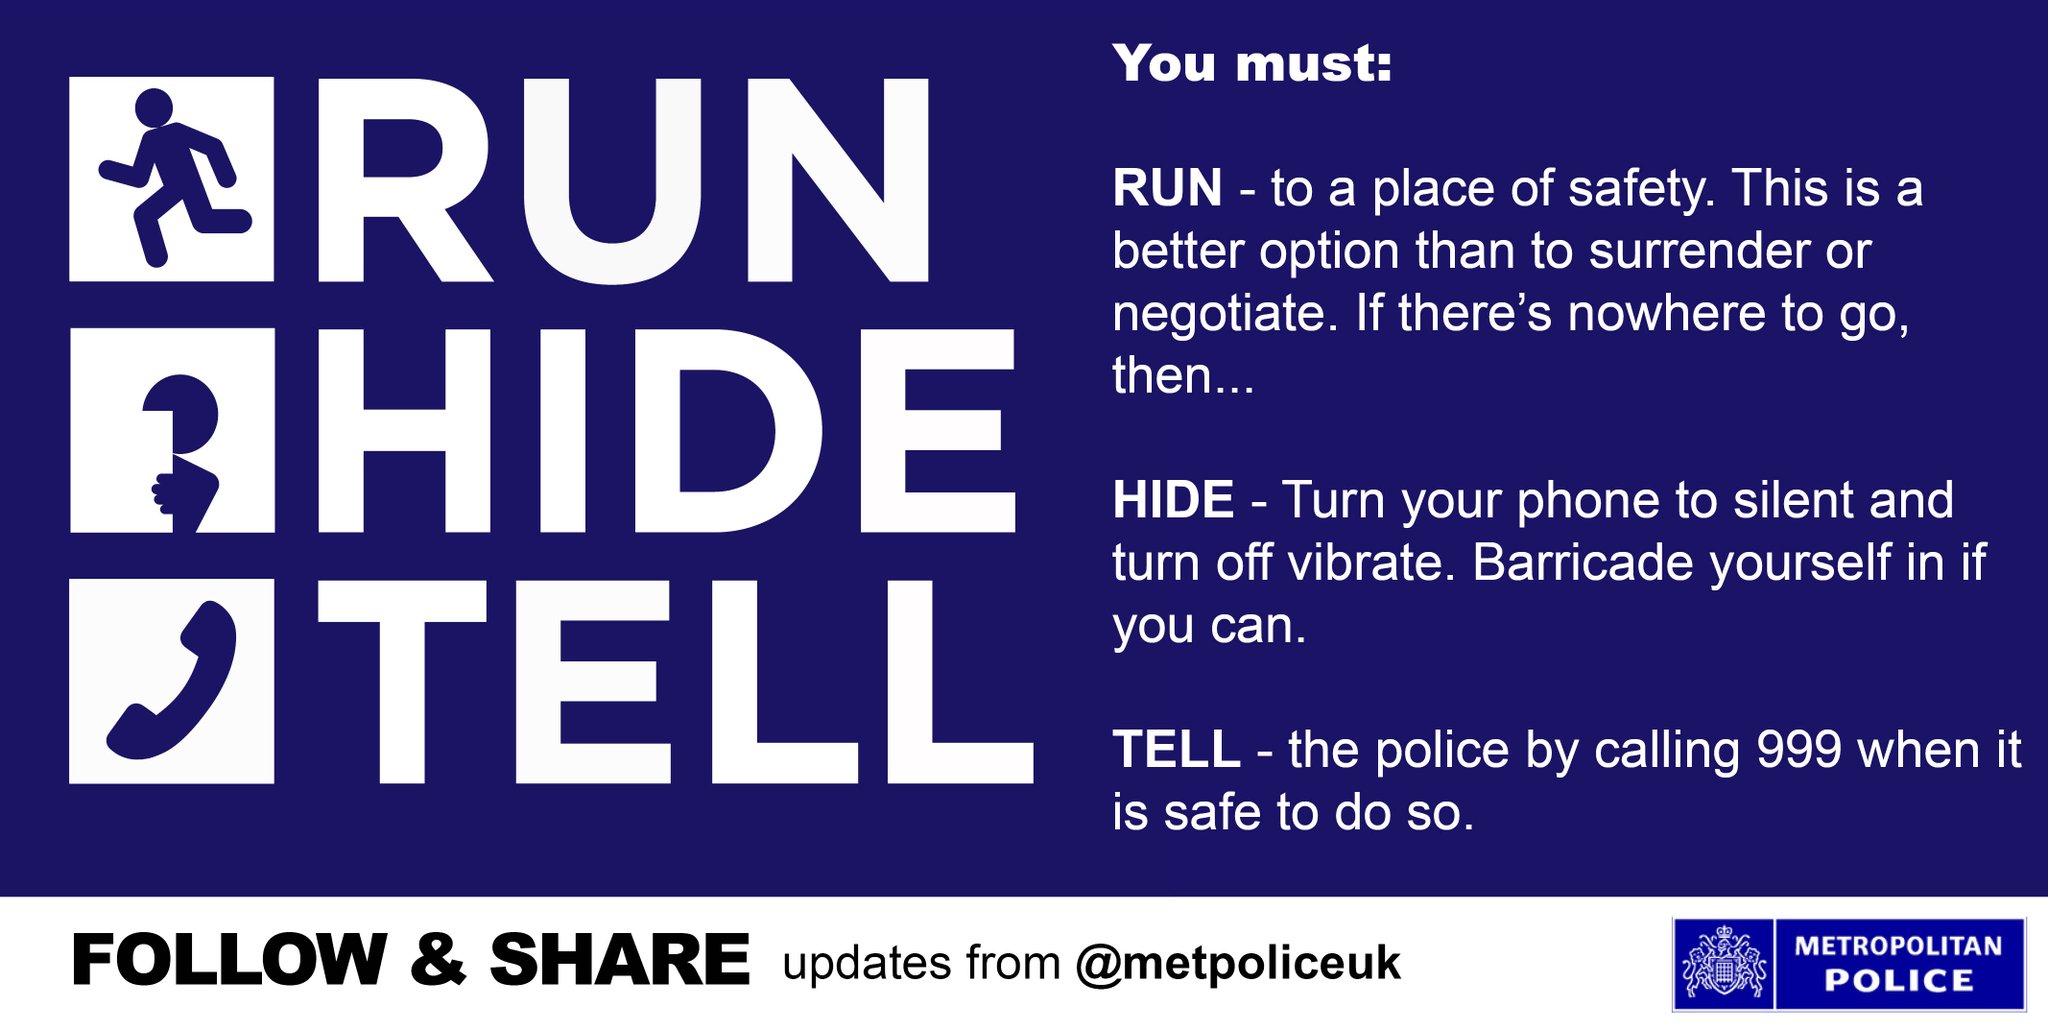 original-run-hide-tell-image-tweeted-out-by-london-met-police-data